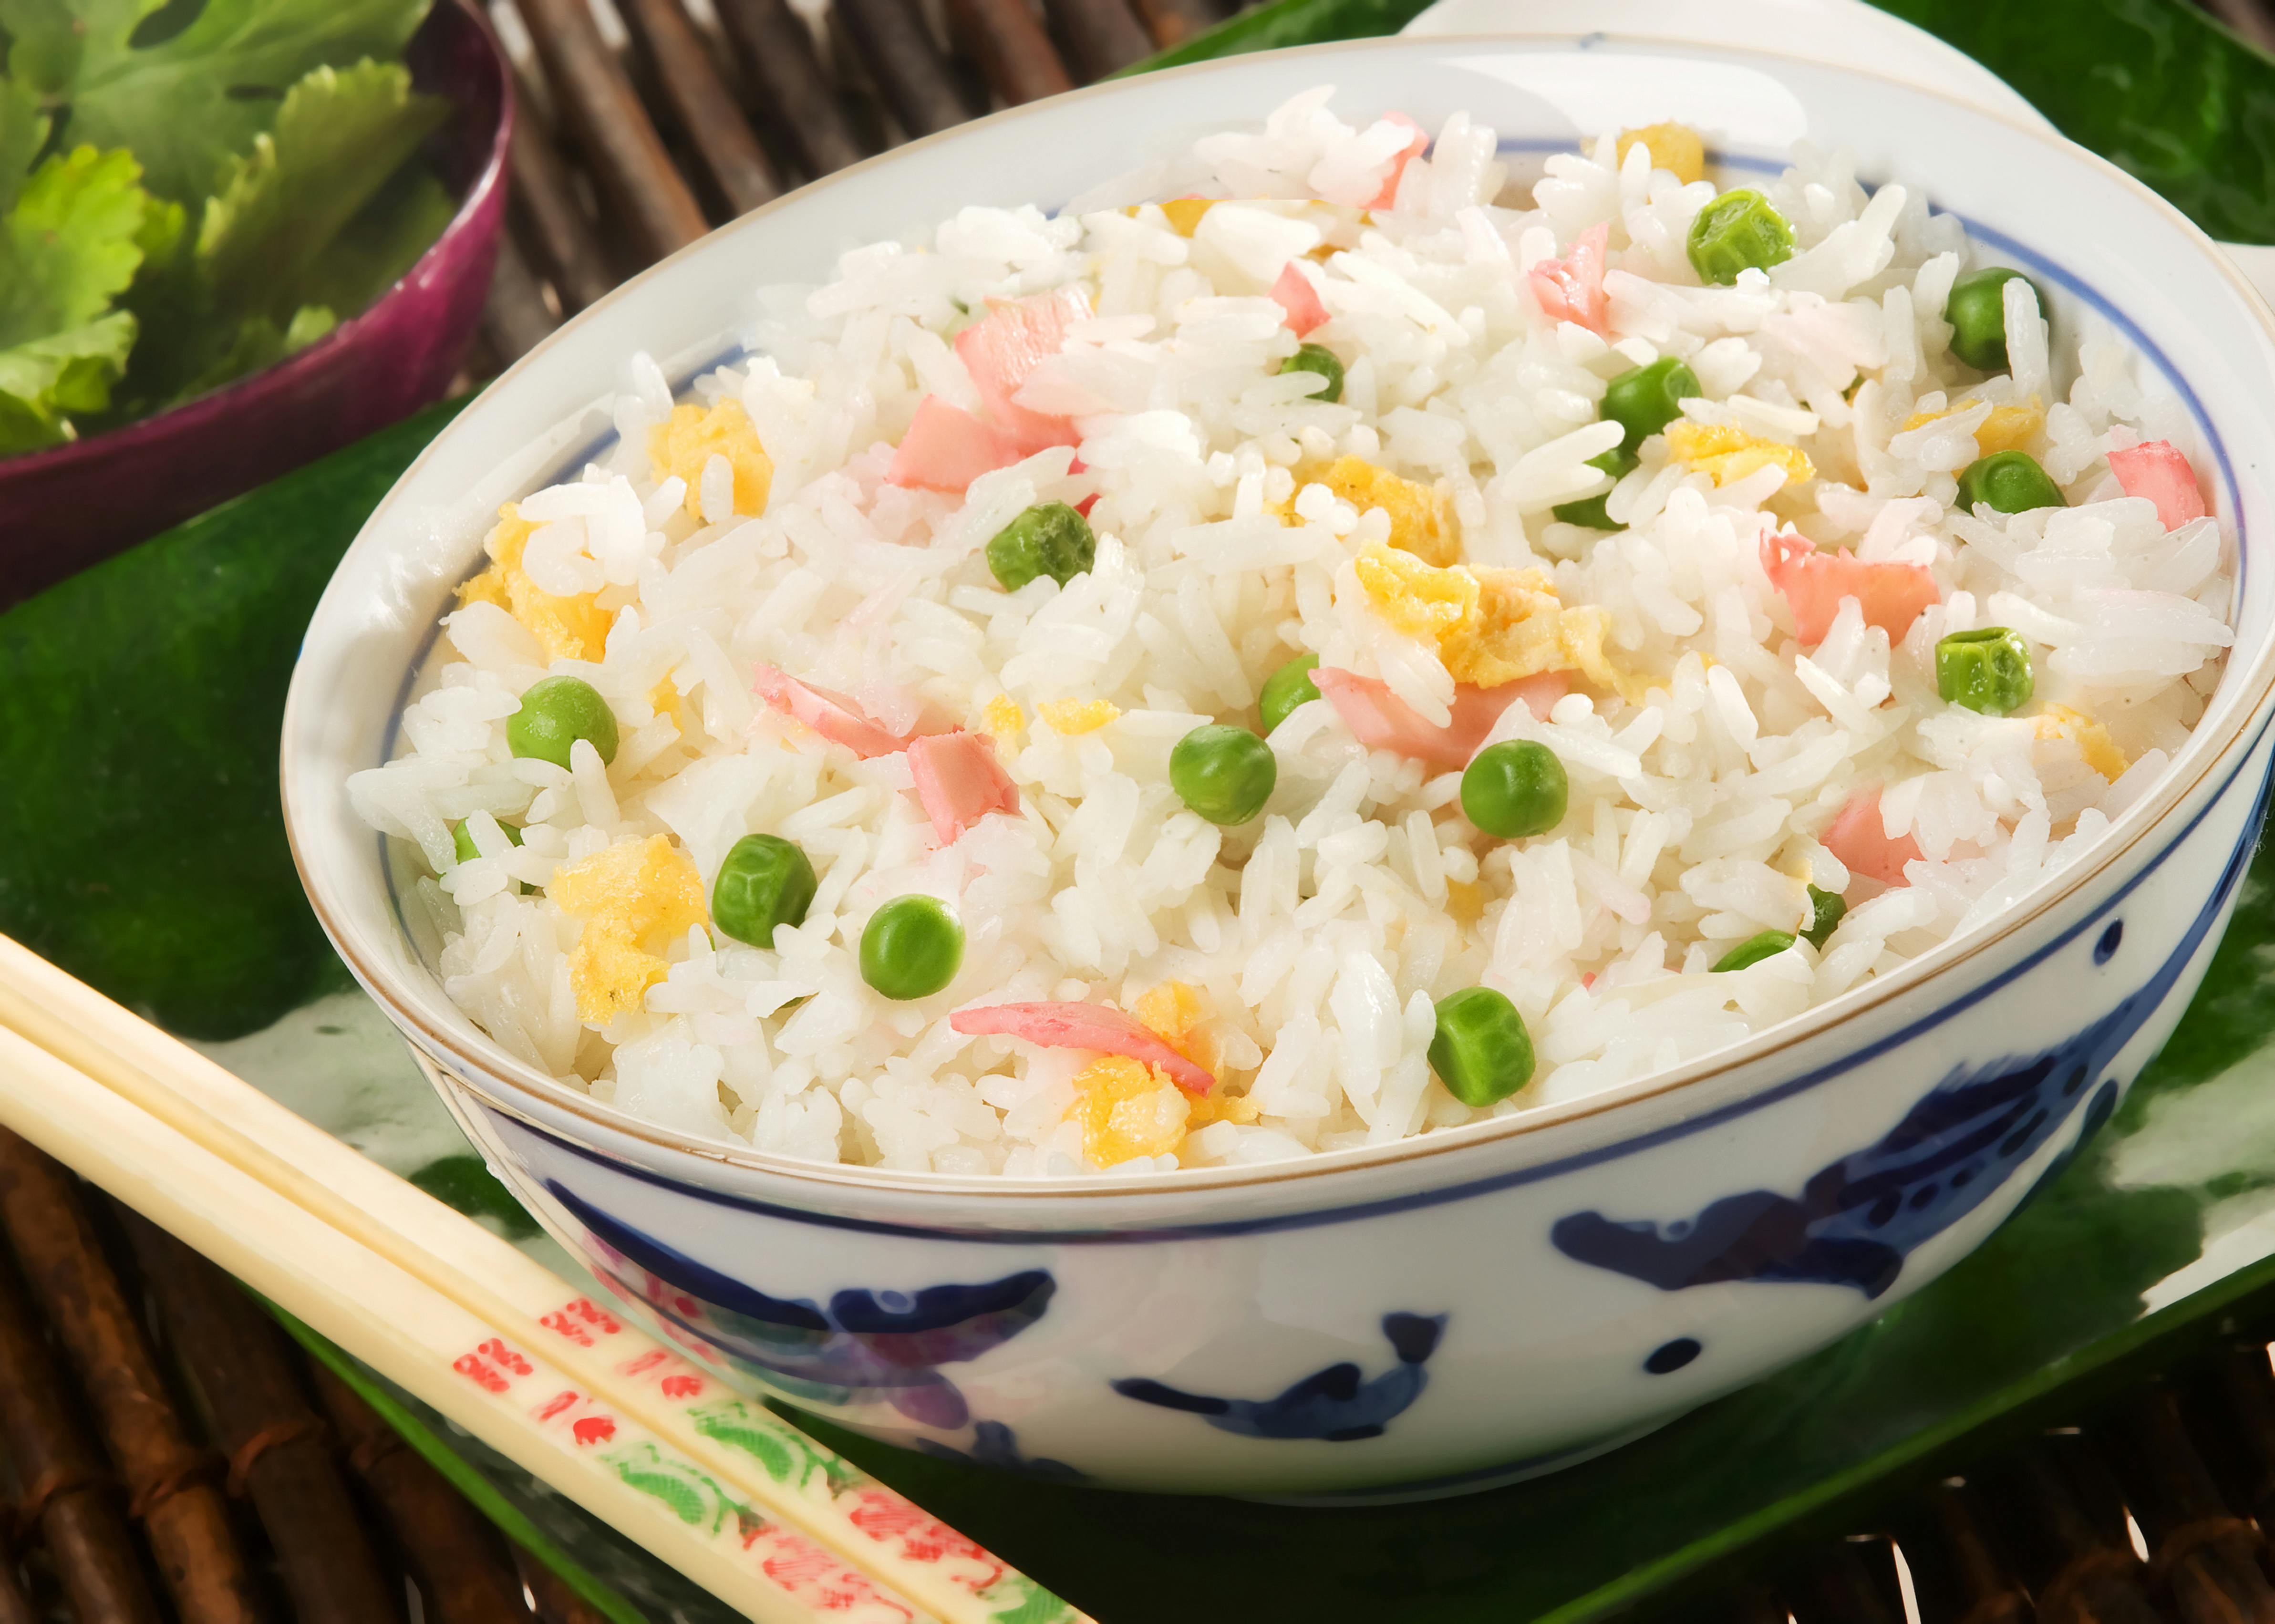 Cuisine : voici comment faire du riz jaune